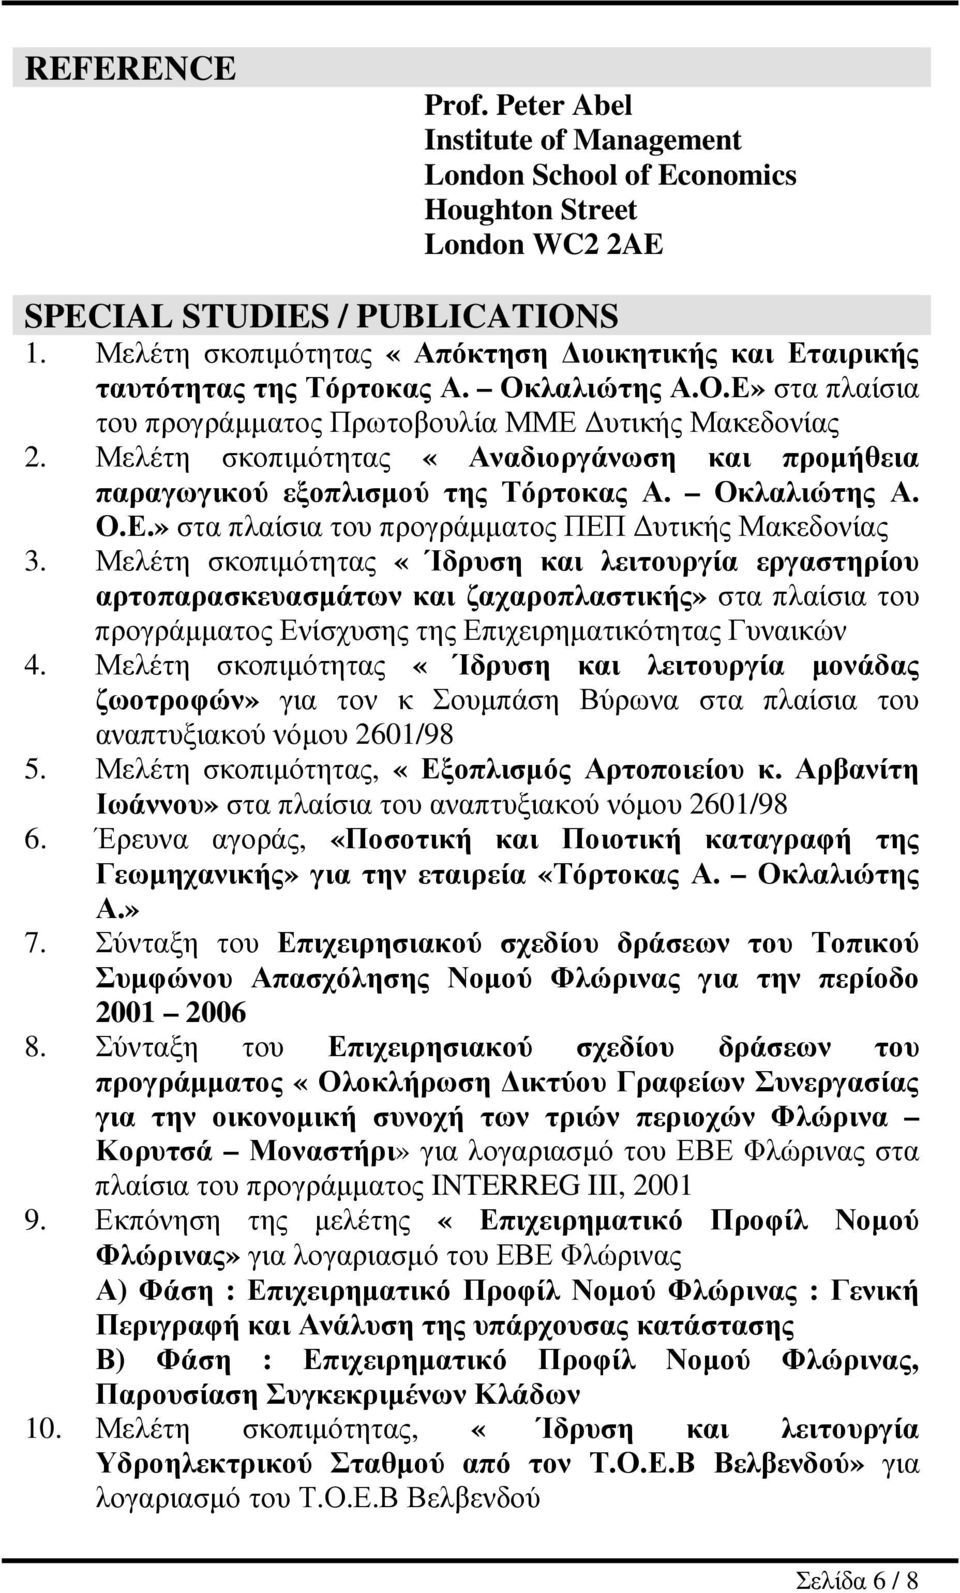 Μελέτη σκοπιµότητας «Αναδιοργάνωση και προµήθεια παραγωγικού εξοπλισµού της Τόρτοκας Α. Οκλαλιώτης Α. Ο.Ε.» στα πλαίσια του προγράµµατος ΠΕΠ υτικής Μακεδονίας 3.